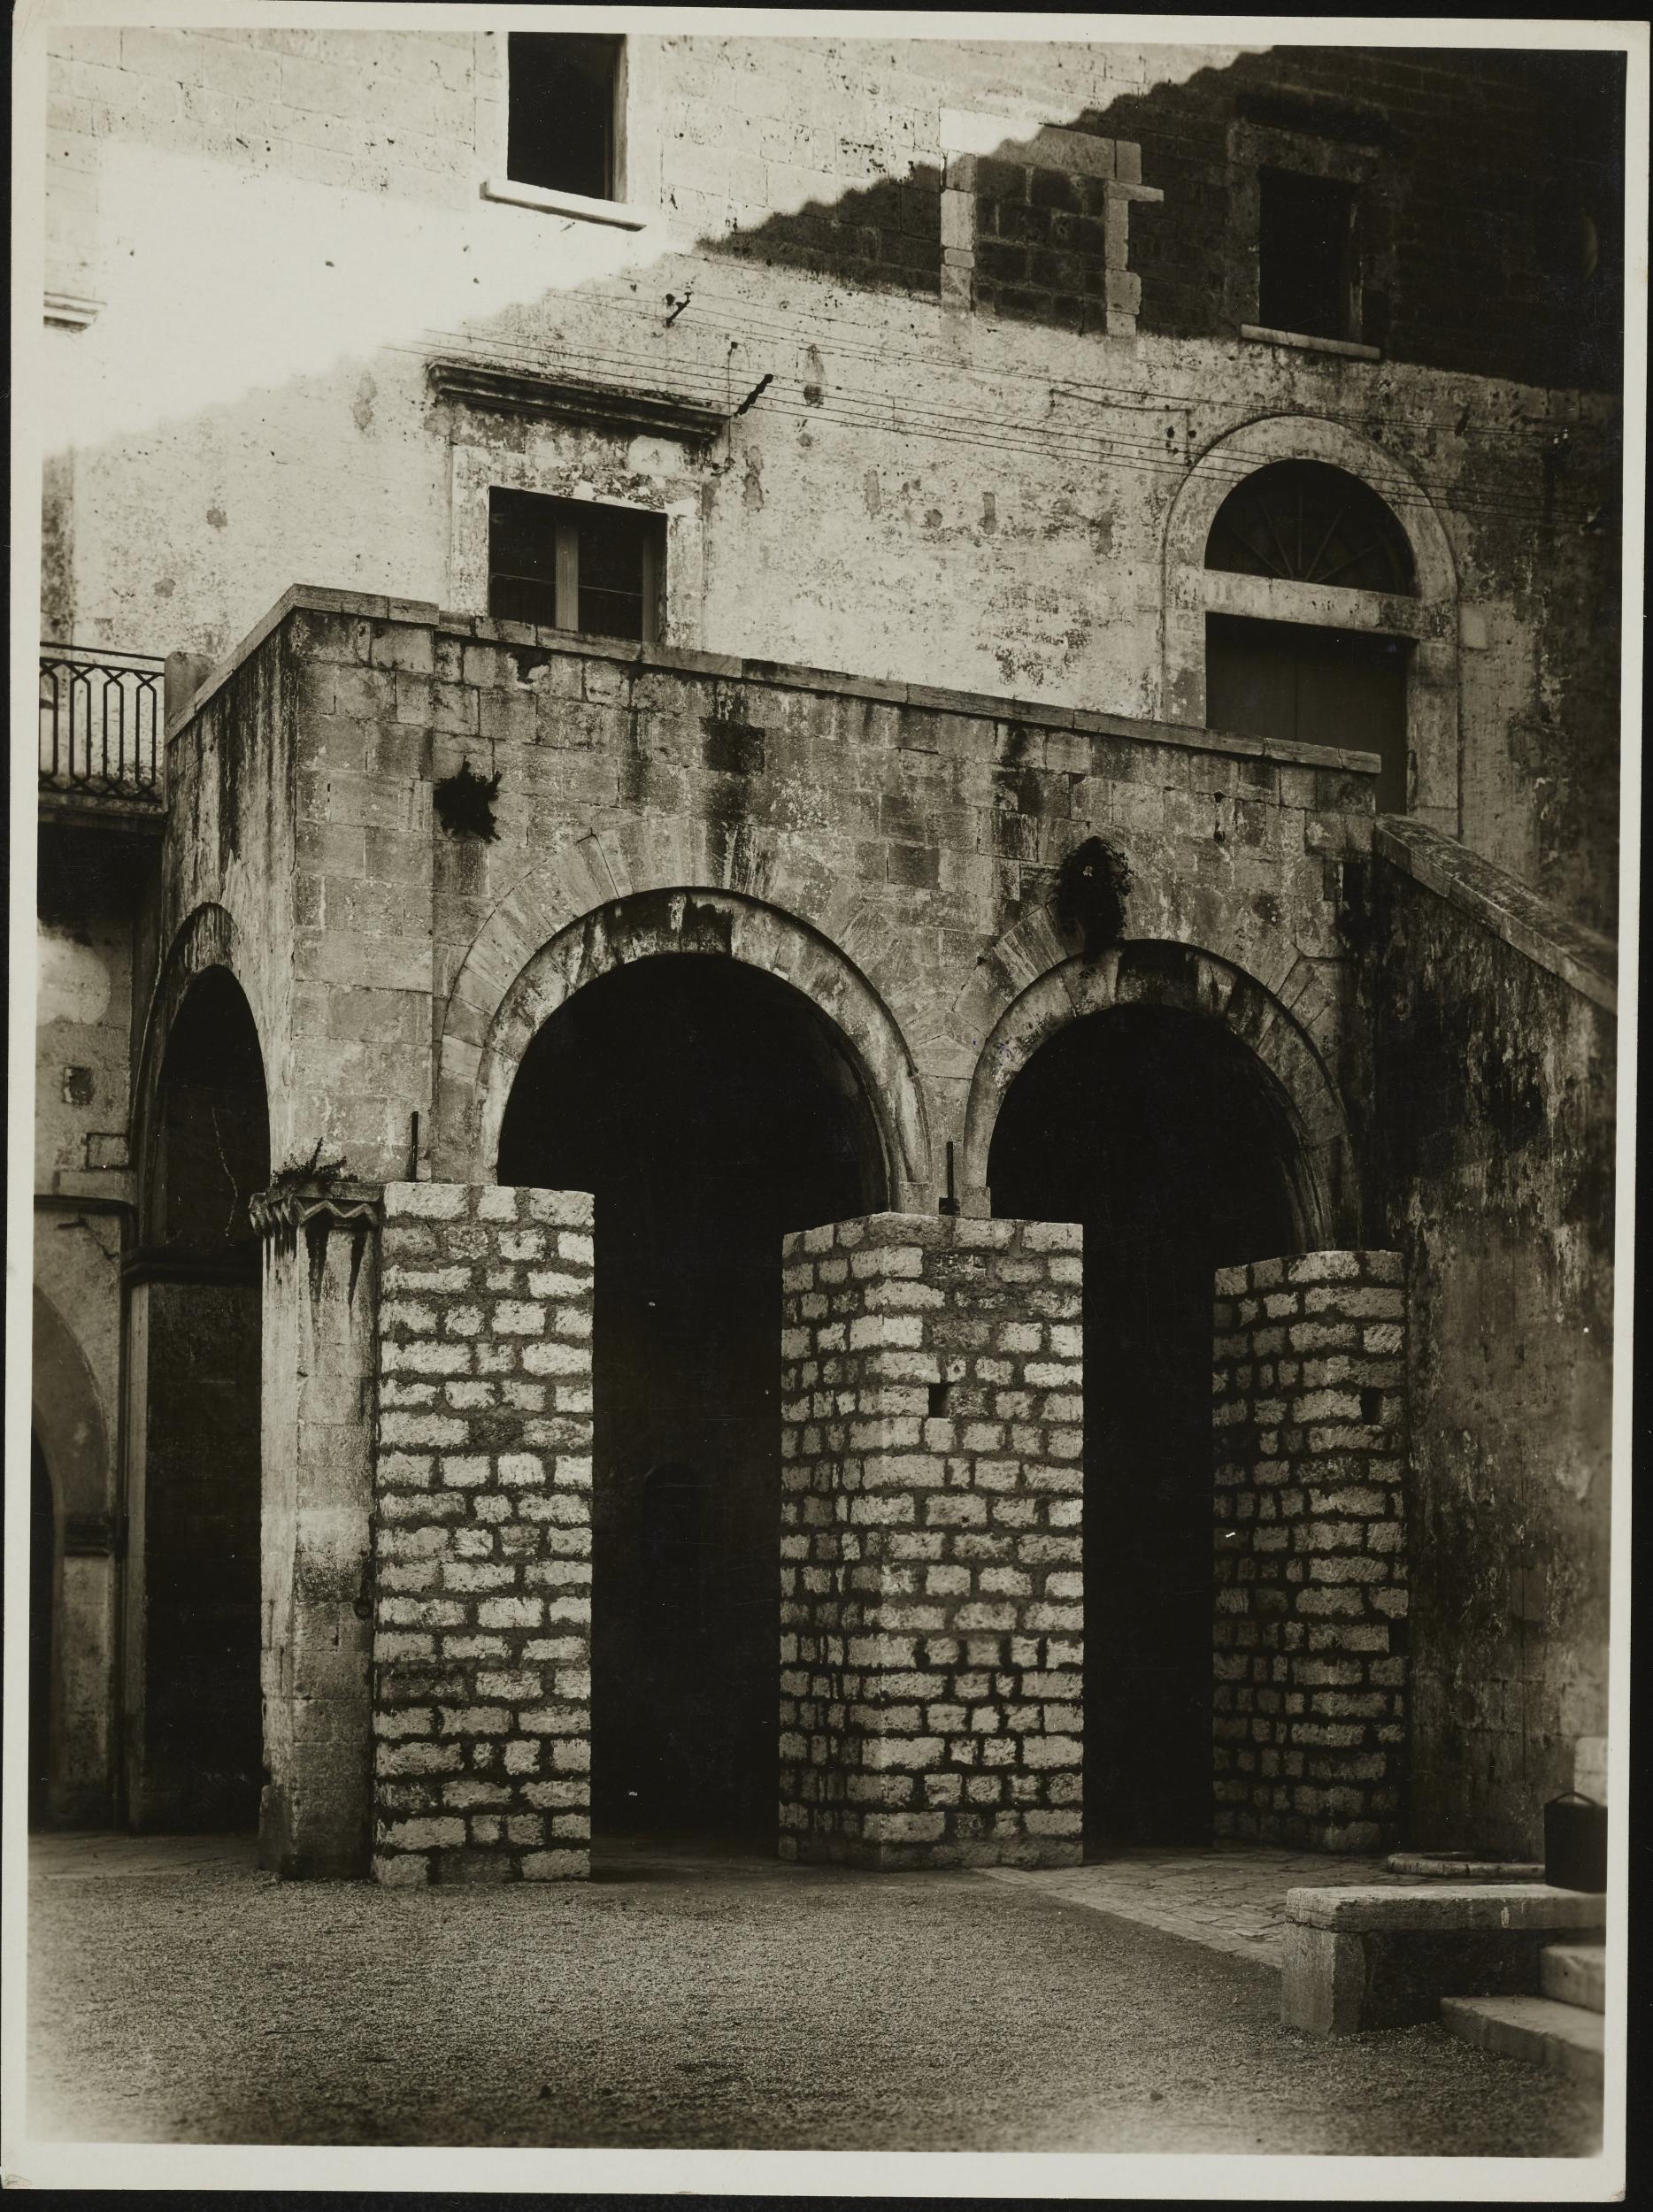 Fotografo non identificato, Bari - Castello, loggia del cortile, 1940, gelatina ai sali d'argento/carta, MPI6019028